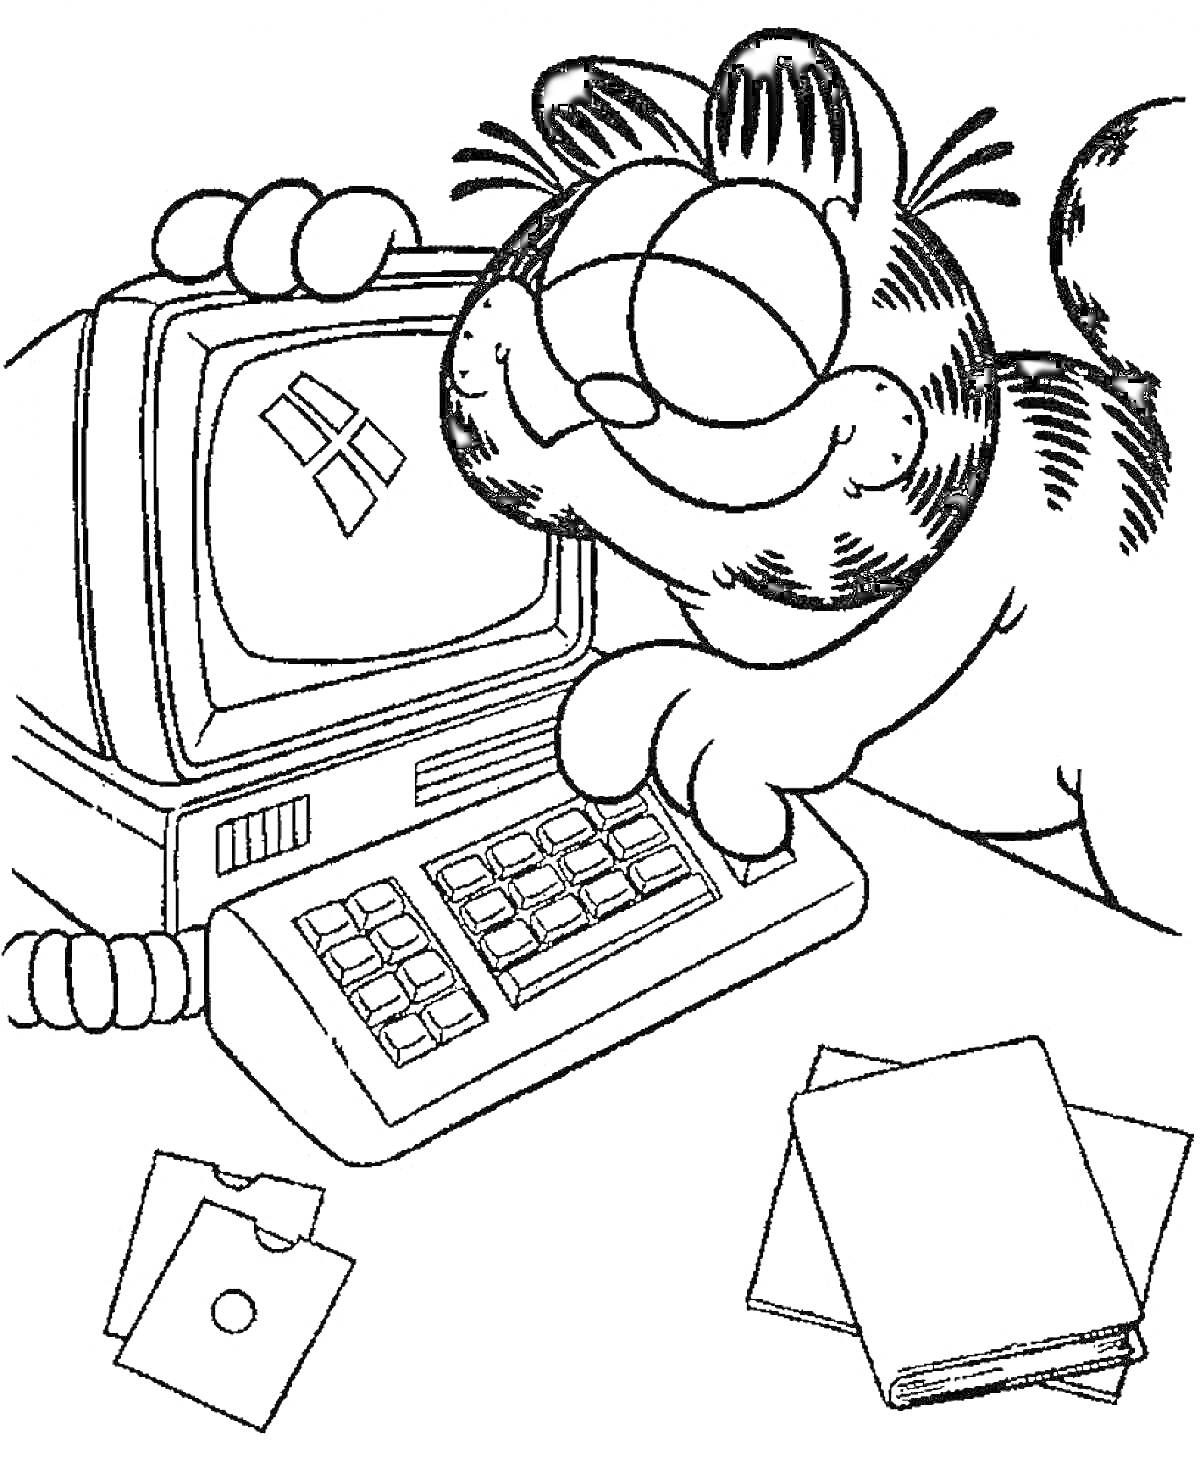 Раскраска Кот за компьютером со старым монитором и клавиатурой, рядом лежат две папки с документами и дискета